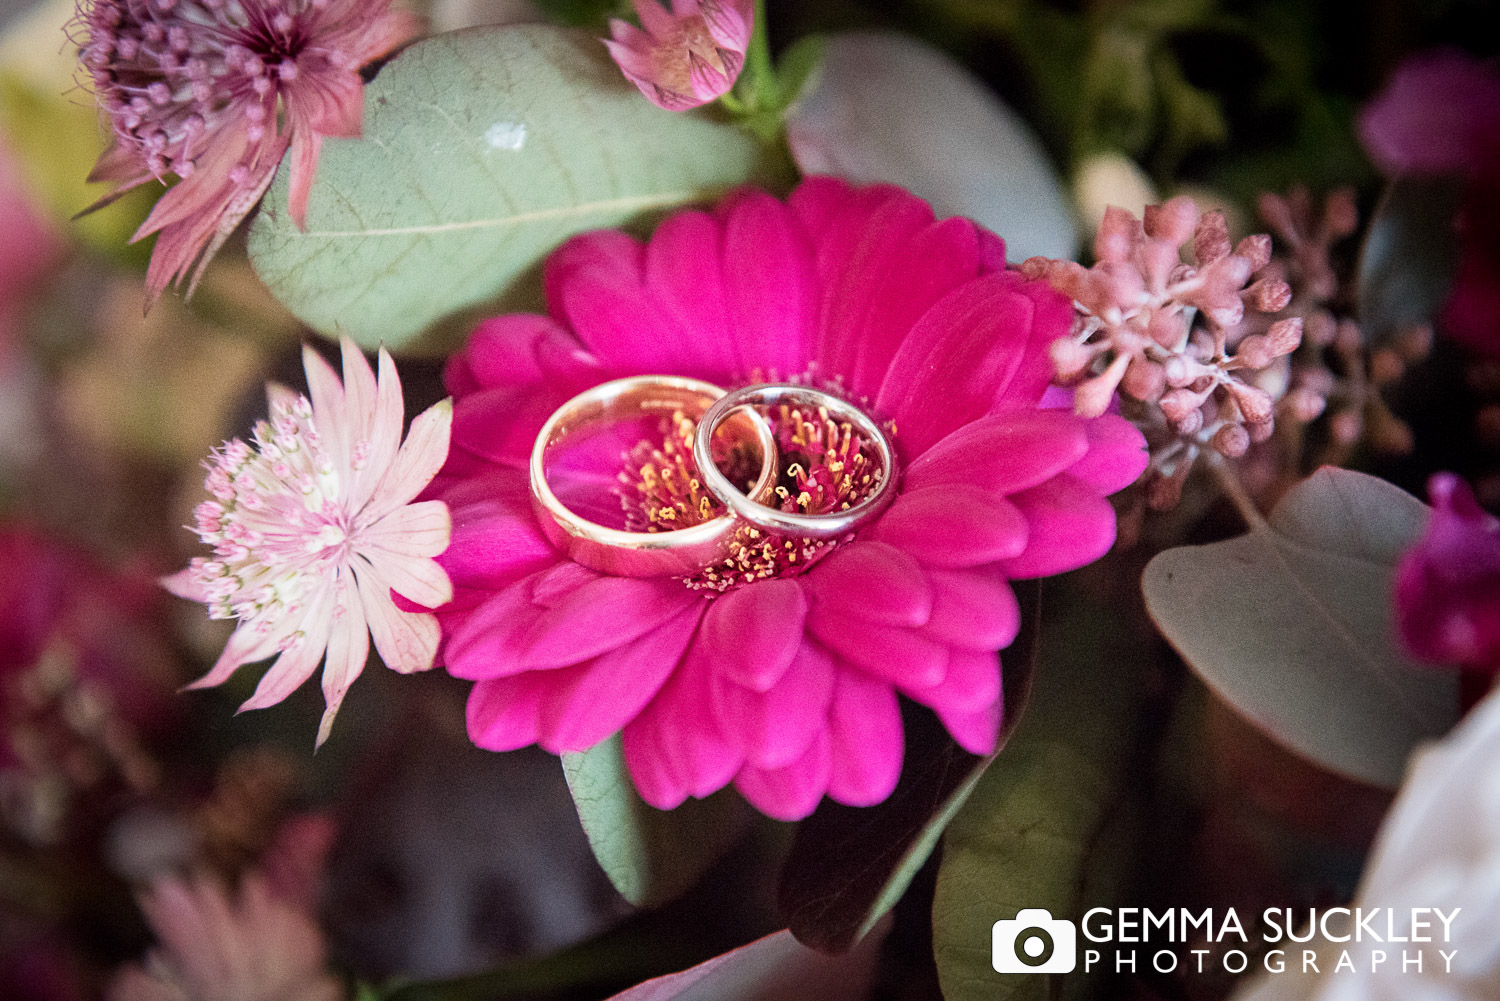 wedding rings presented on wedding flowers